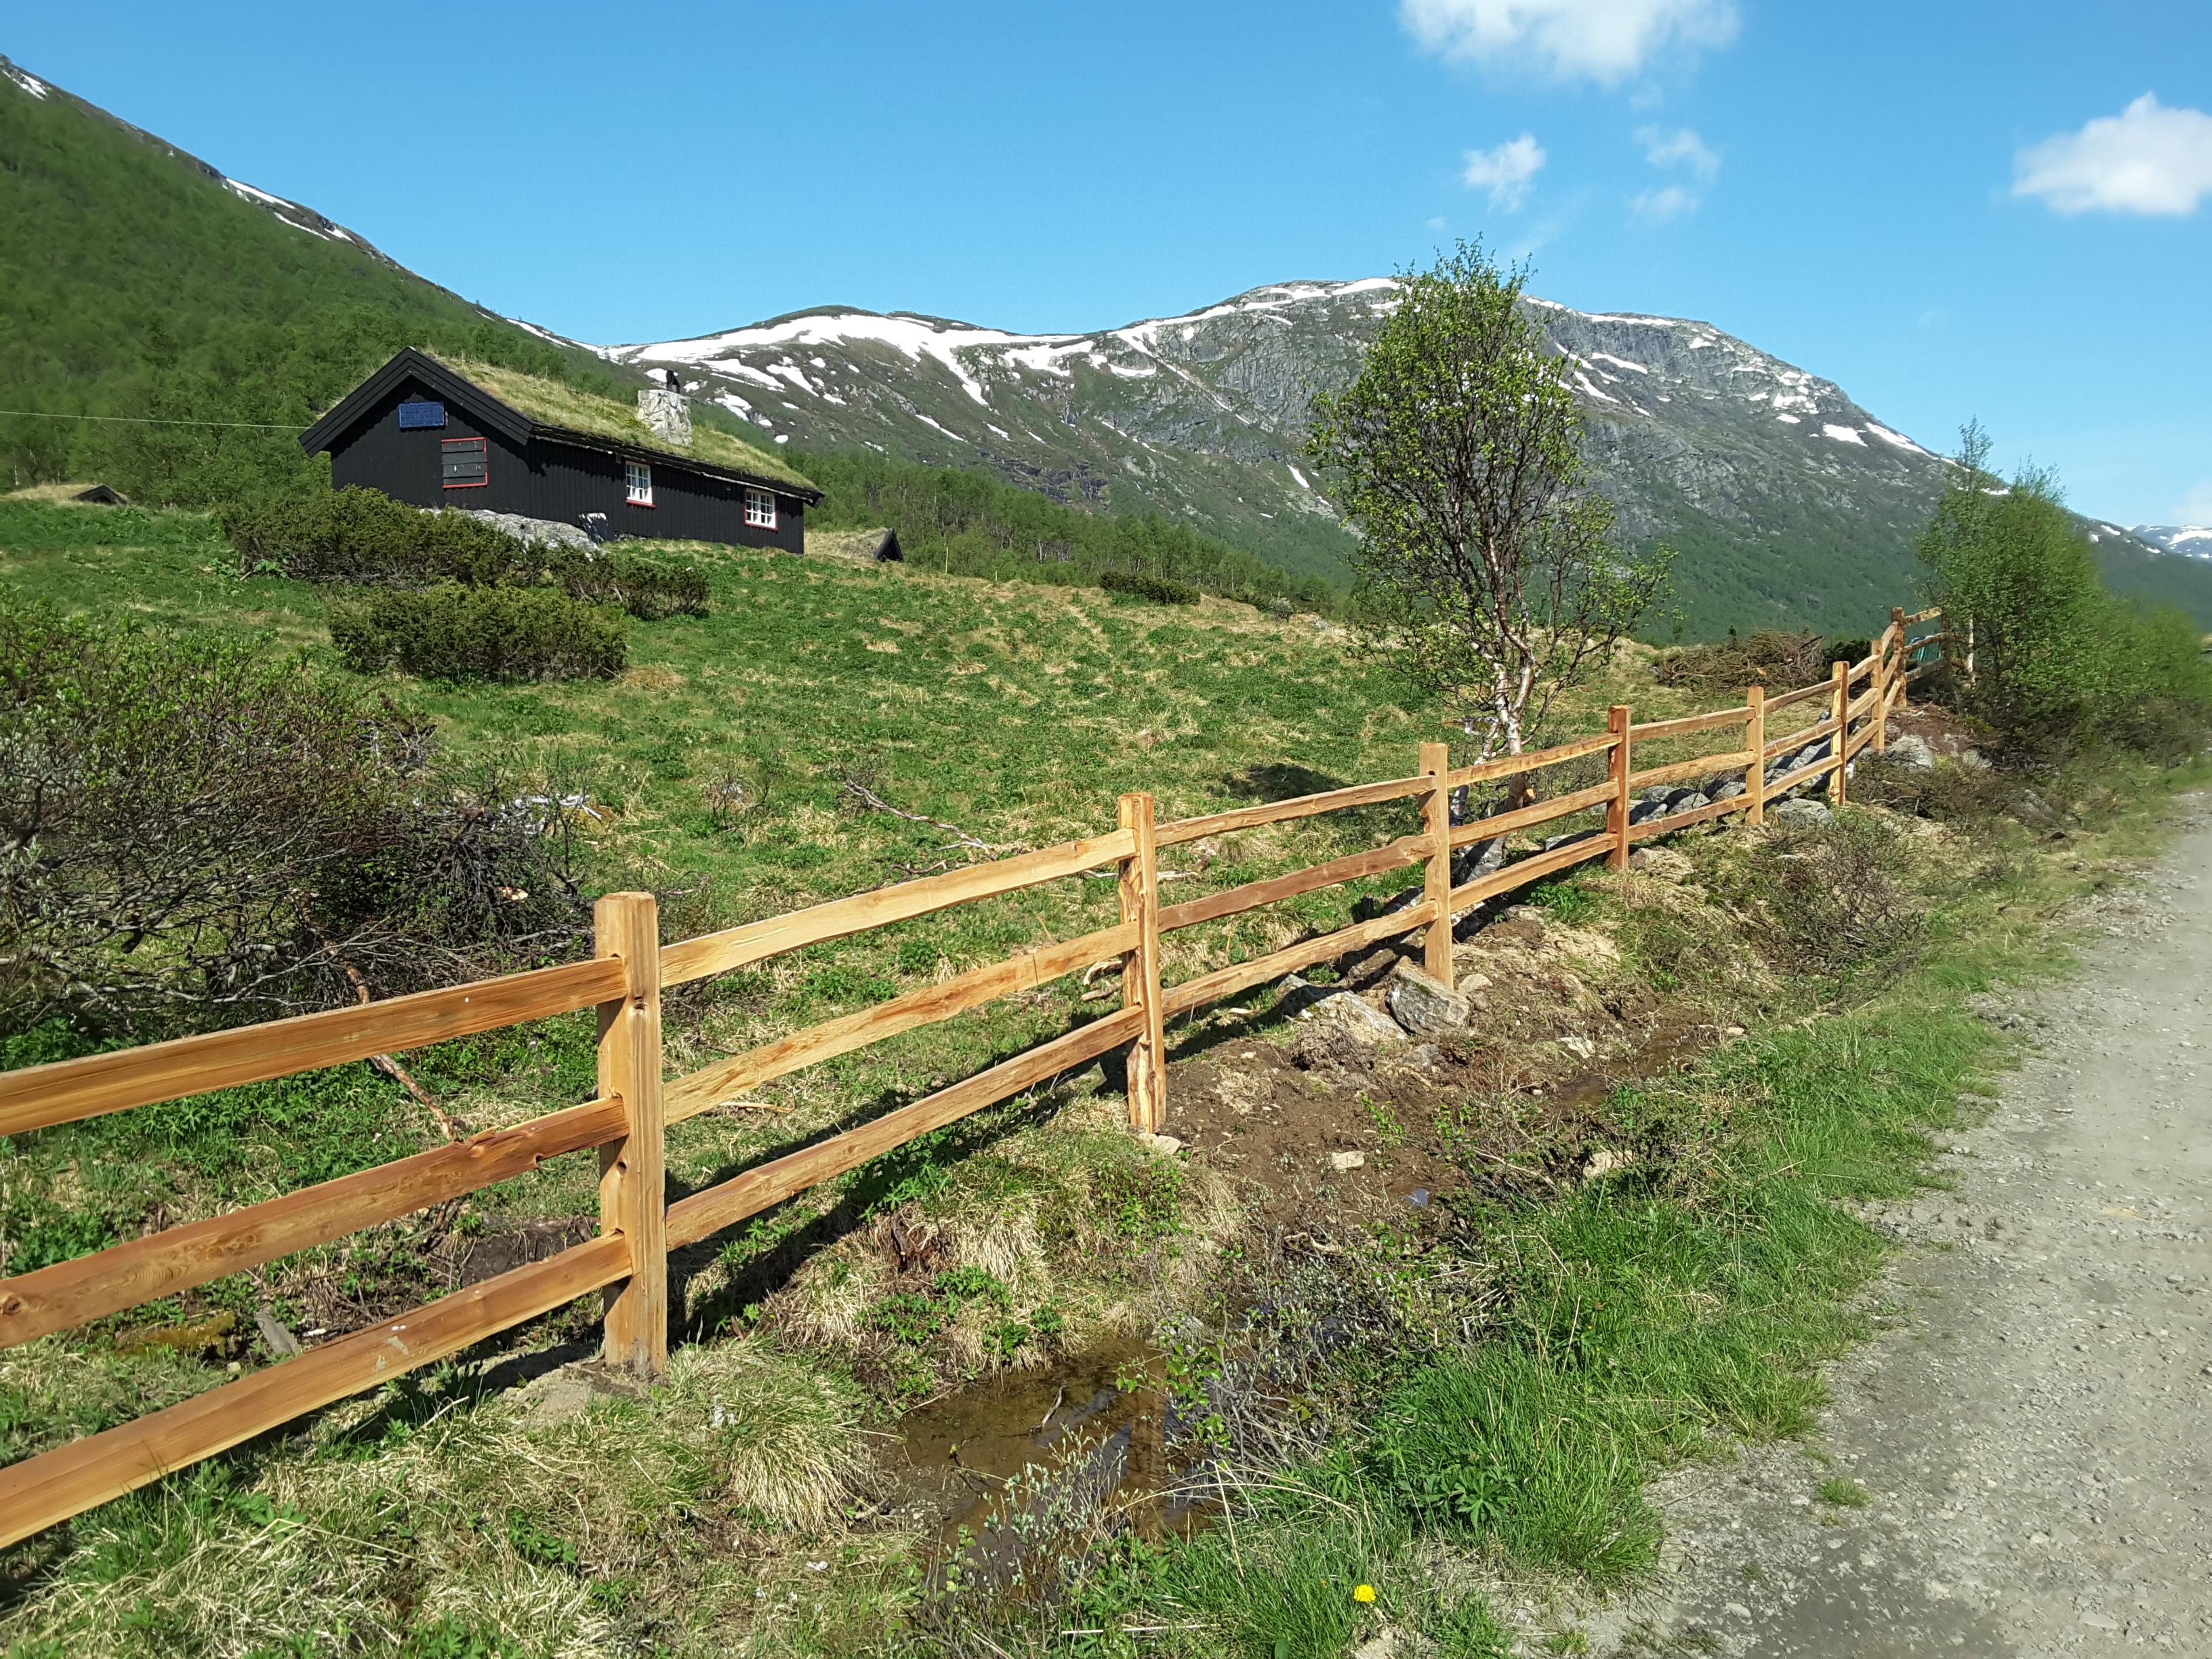 Een rustiek cederhouten hek grenst aan een natuurperceel met een hut in een bergachtig gebied.